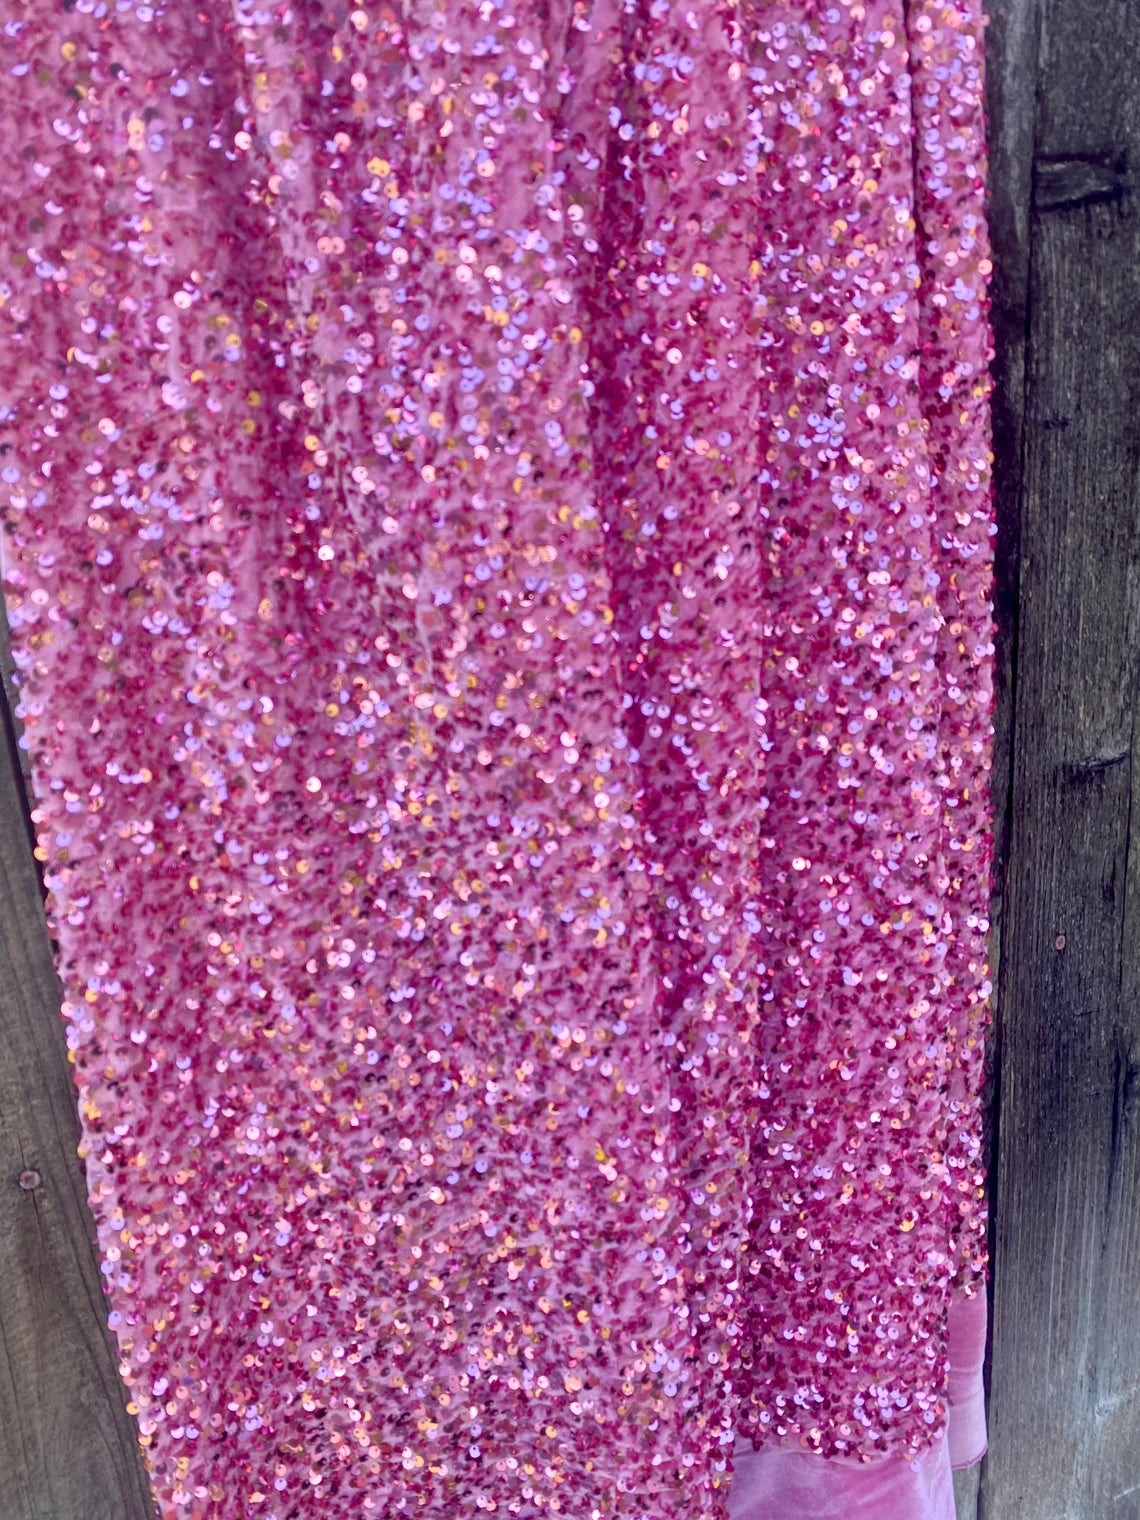  pink Sequin on Velvet, velvet cloth, pink velvet, sequin stretch velvet, velvet for gown, stretch velvet, velvet fabric with sequin, solid velvet, rose pink sequin fabric, sequin fabric for gown, 4 way stretch velvet